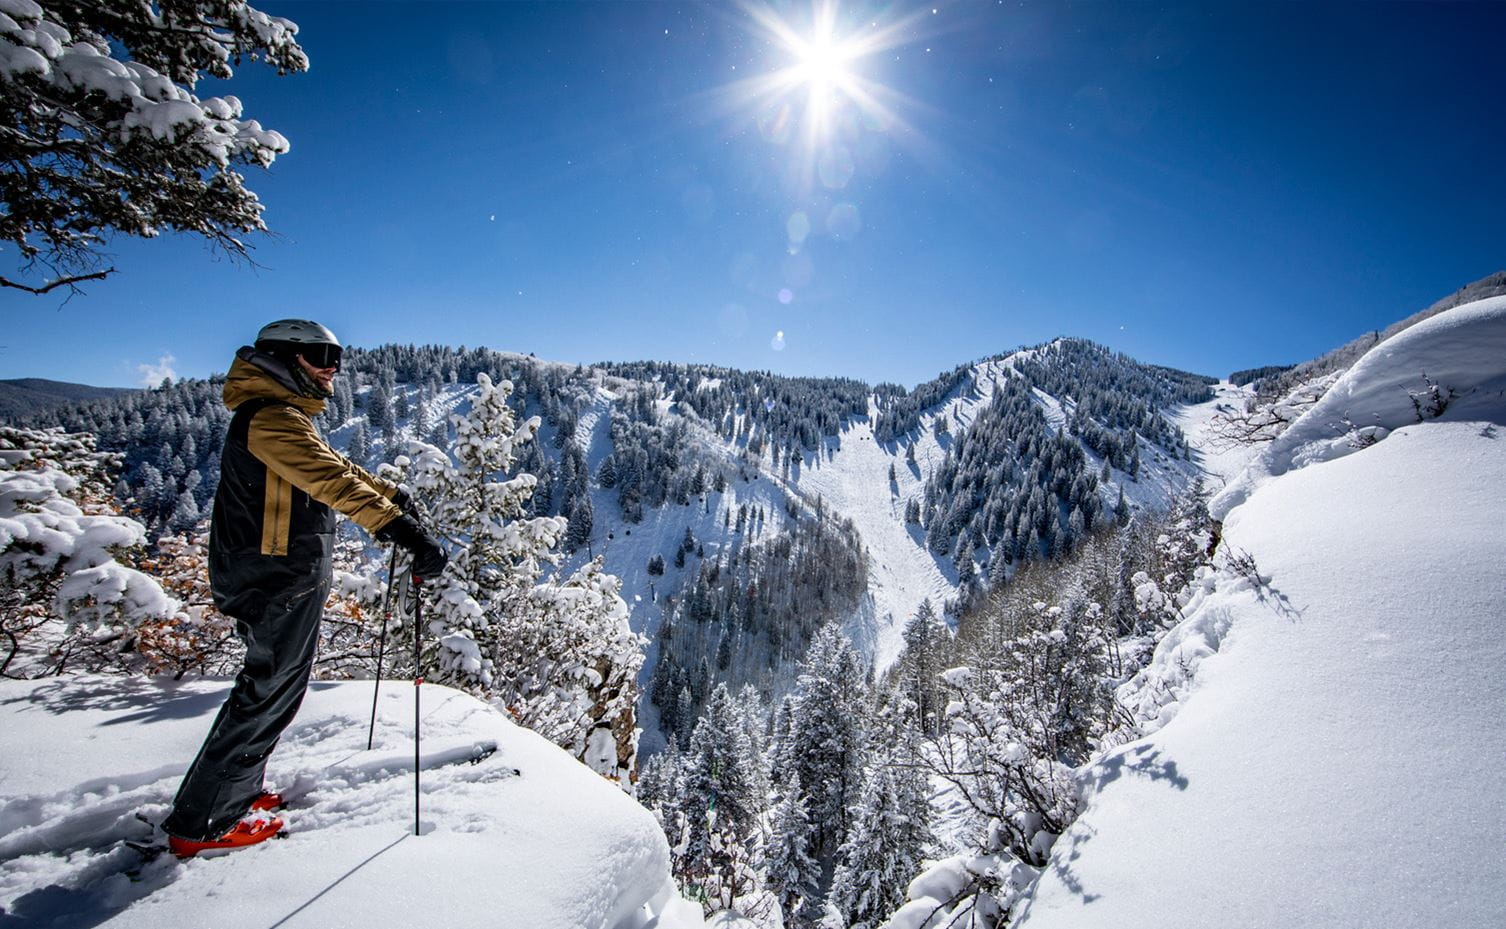 Aspen Snowmass Ski Trip Packing List